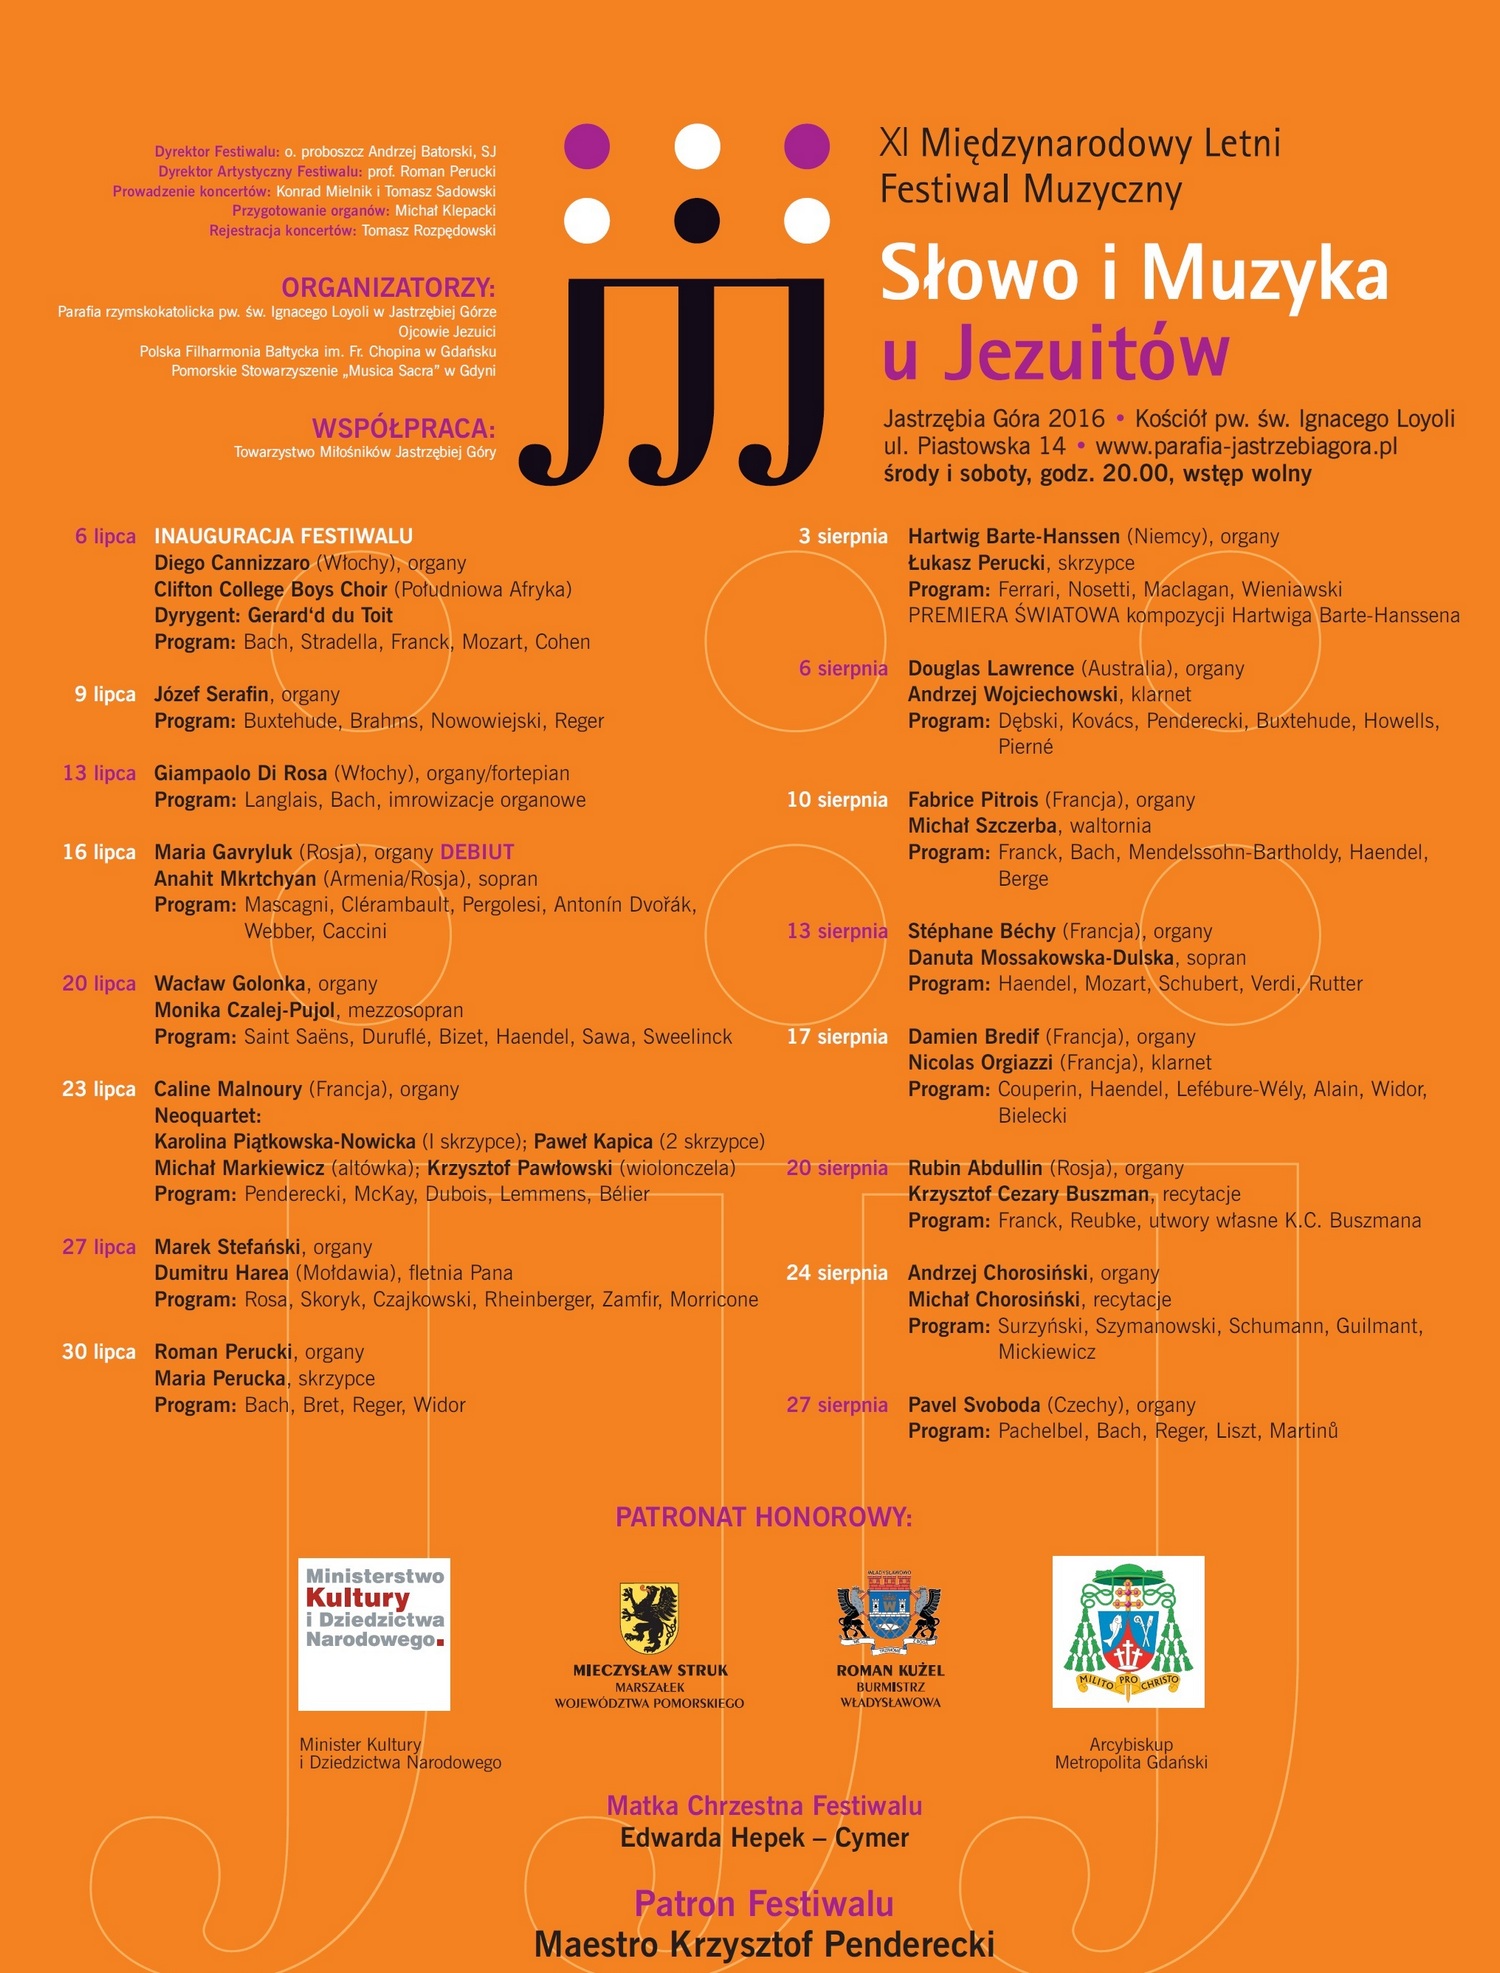 „XI Międzynarodowy Letni Festiwal Muzyczny Słowo i muzyka u Jezuitów” – plakat (źródło: materiały prasowe organizatora)